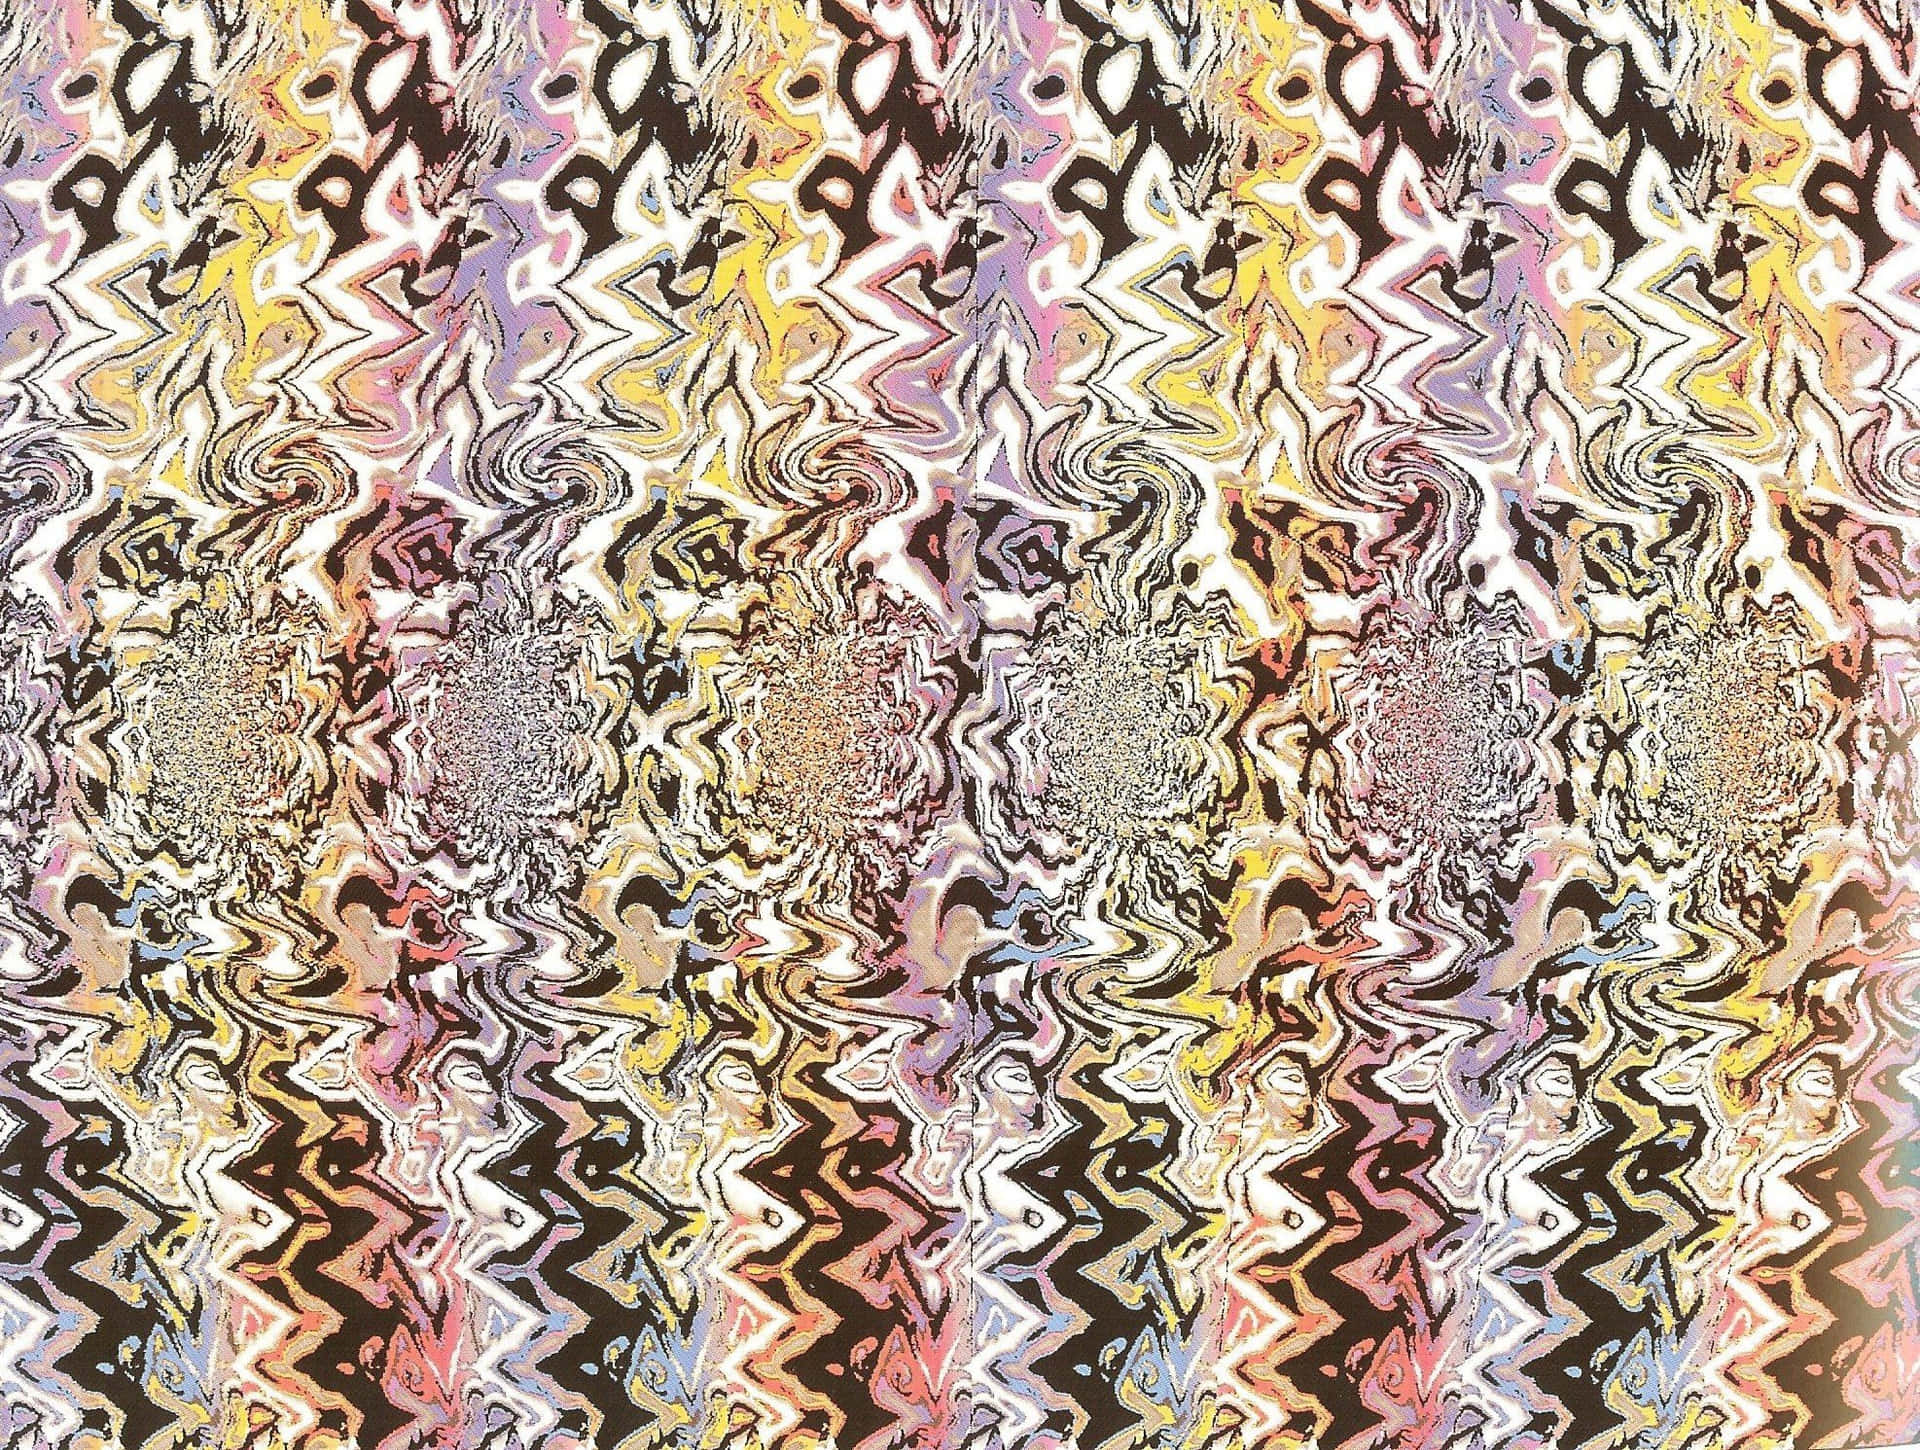 Abstrakteszickzack Magic Eye 3d Stereogramm Bild